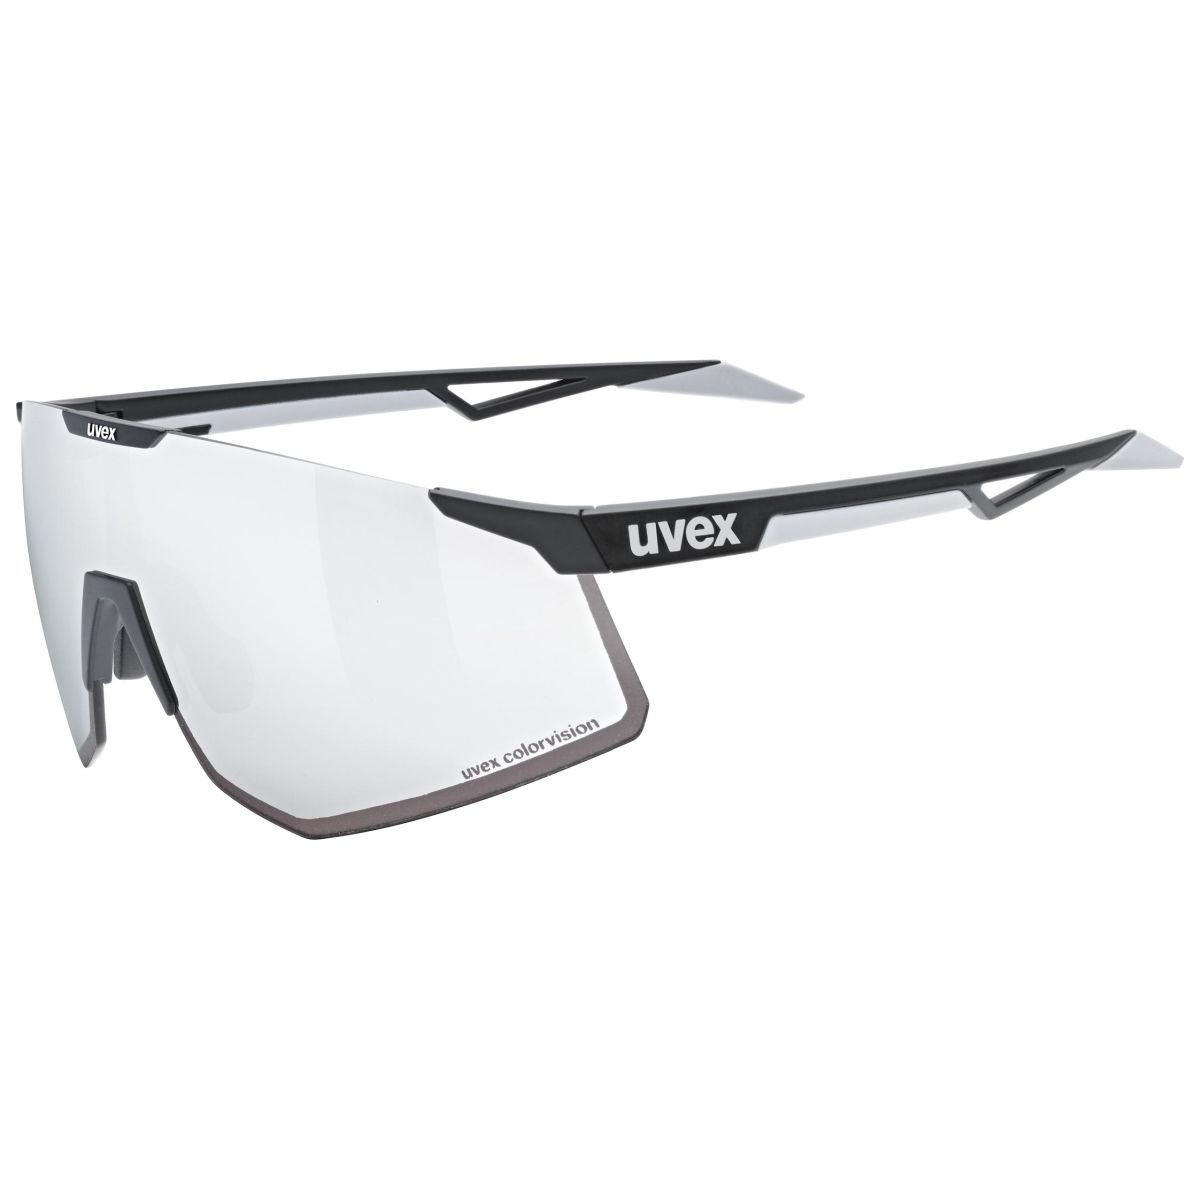 Produktbild von Uvex pace perform CV Brille - black matt/mirror silver colorvision